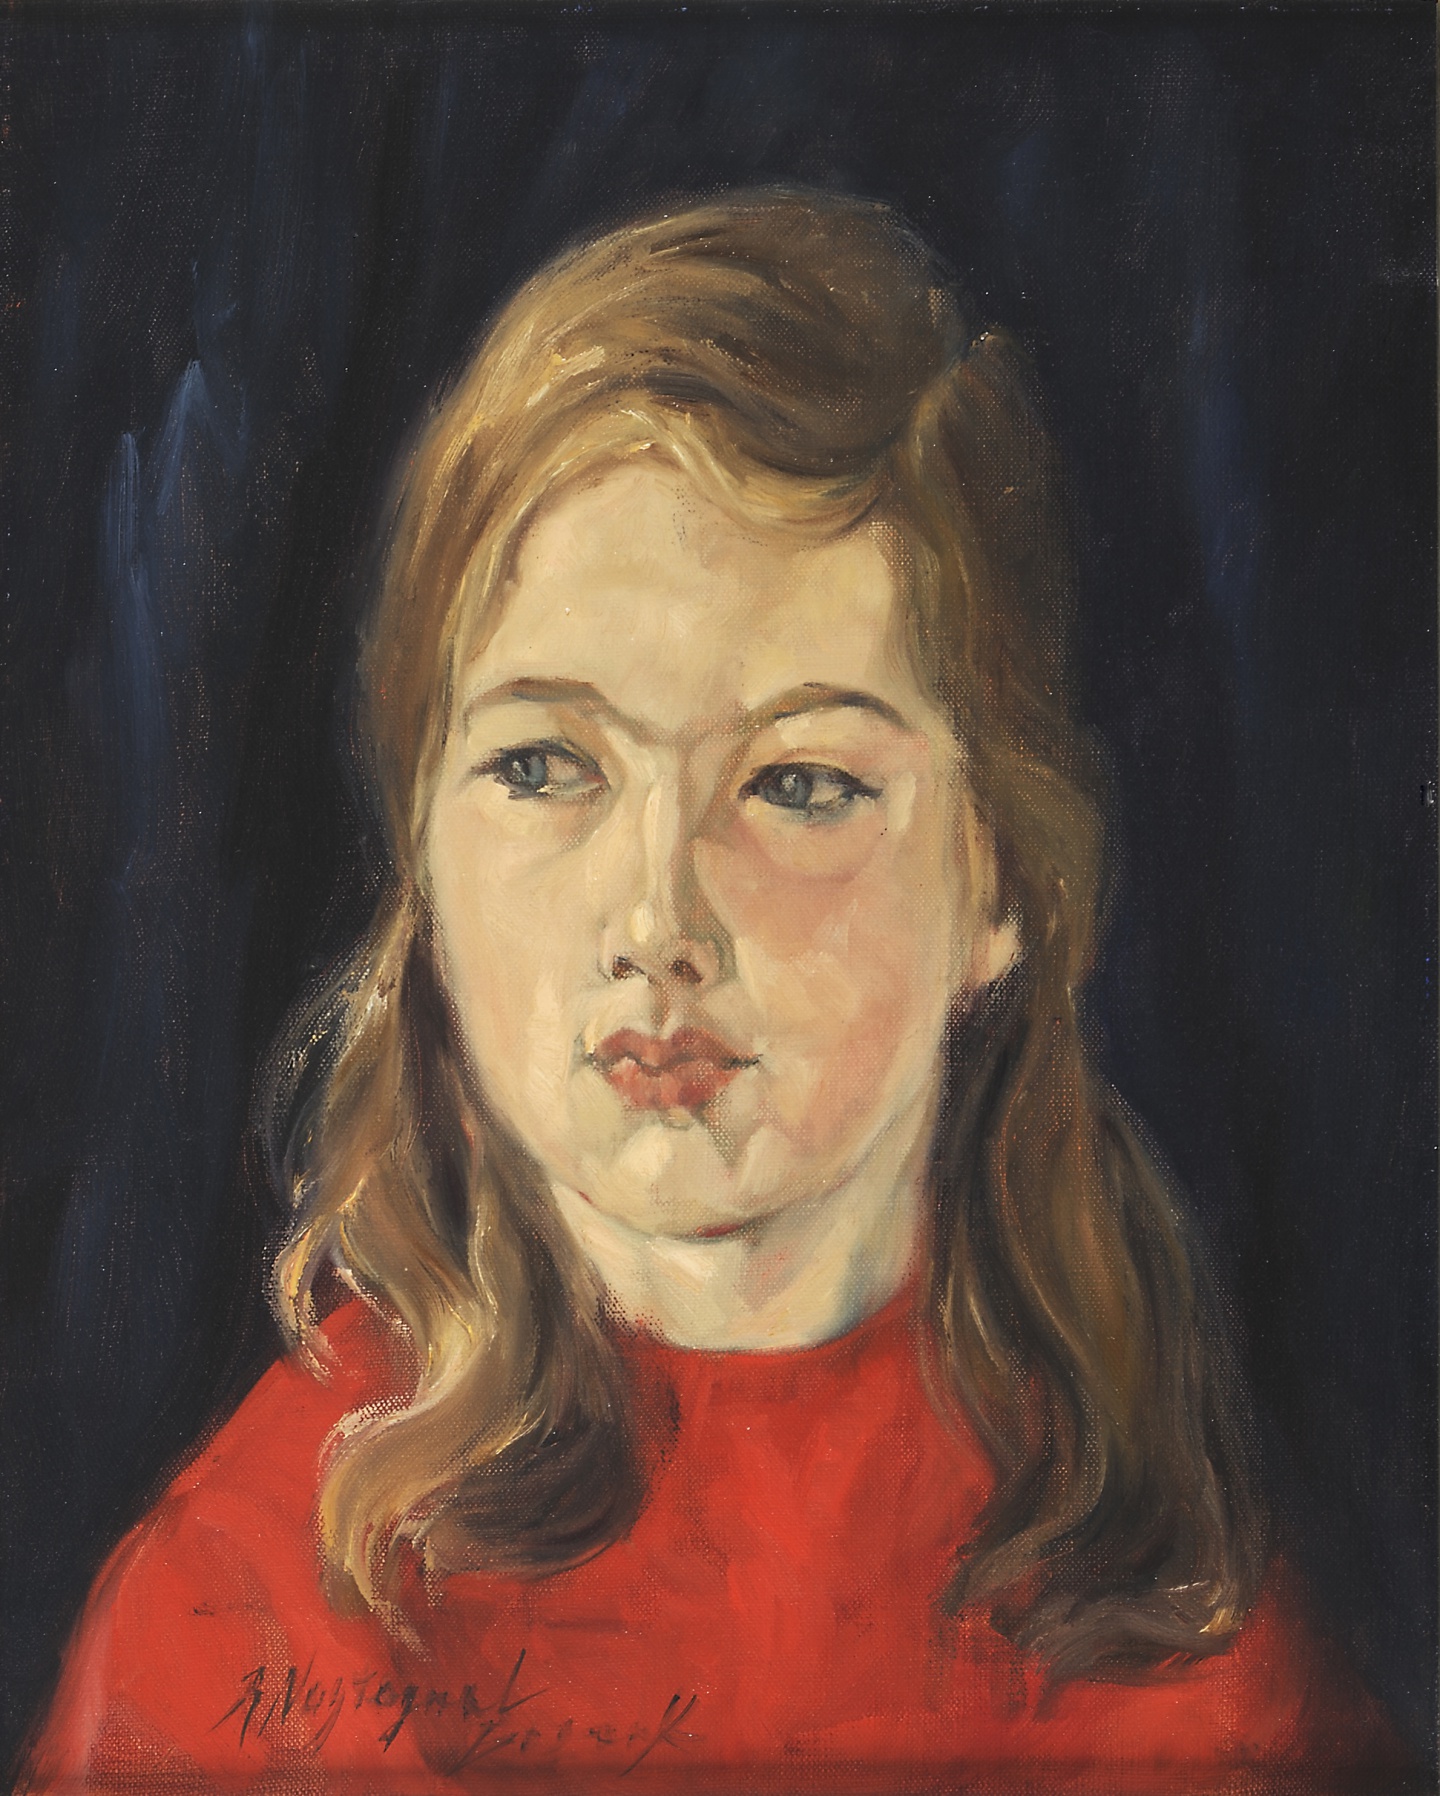 Welke populaire schrijfster is in de galerij vertegenwoordigd met een jeugdportret?